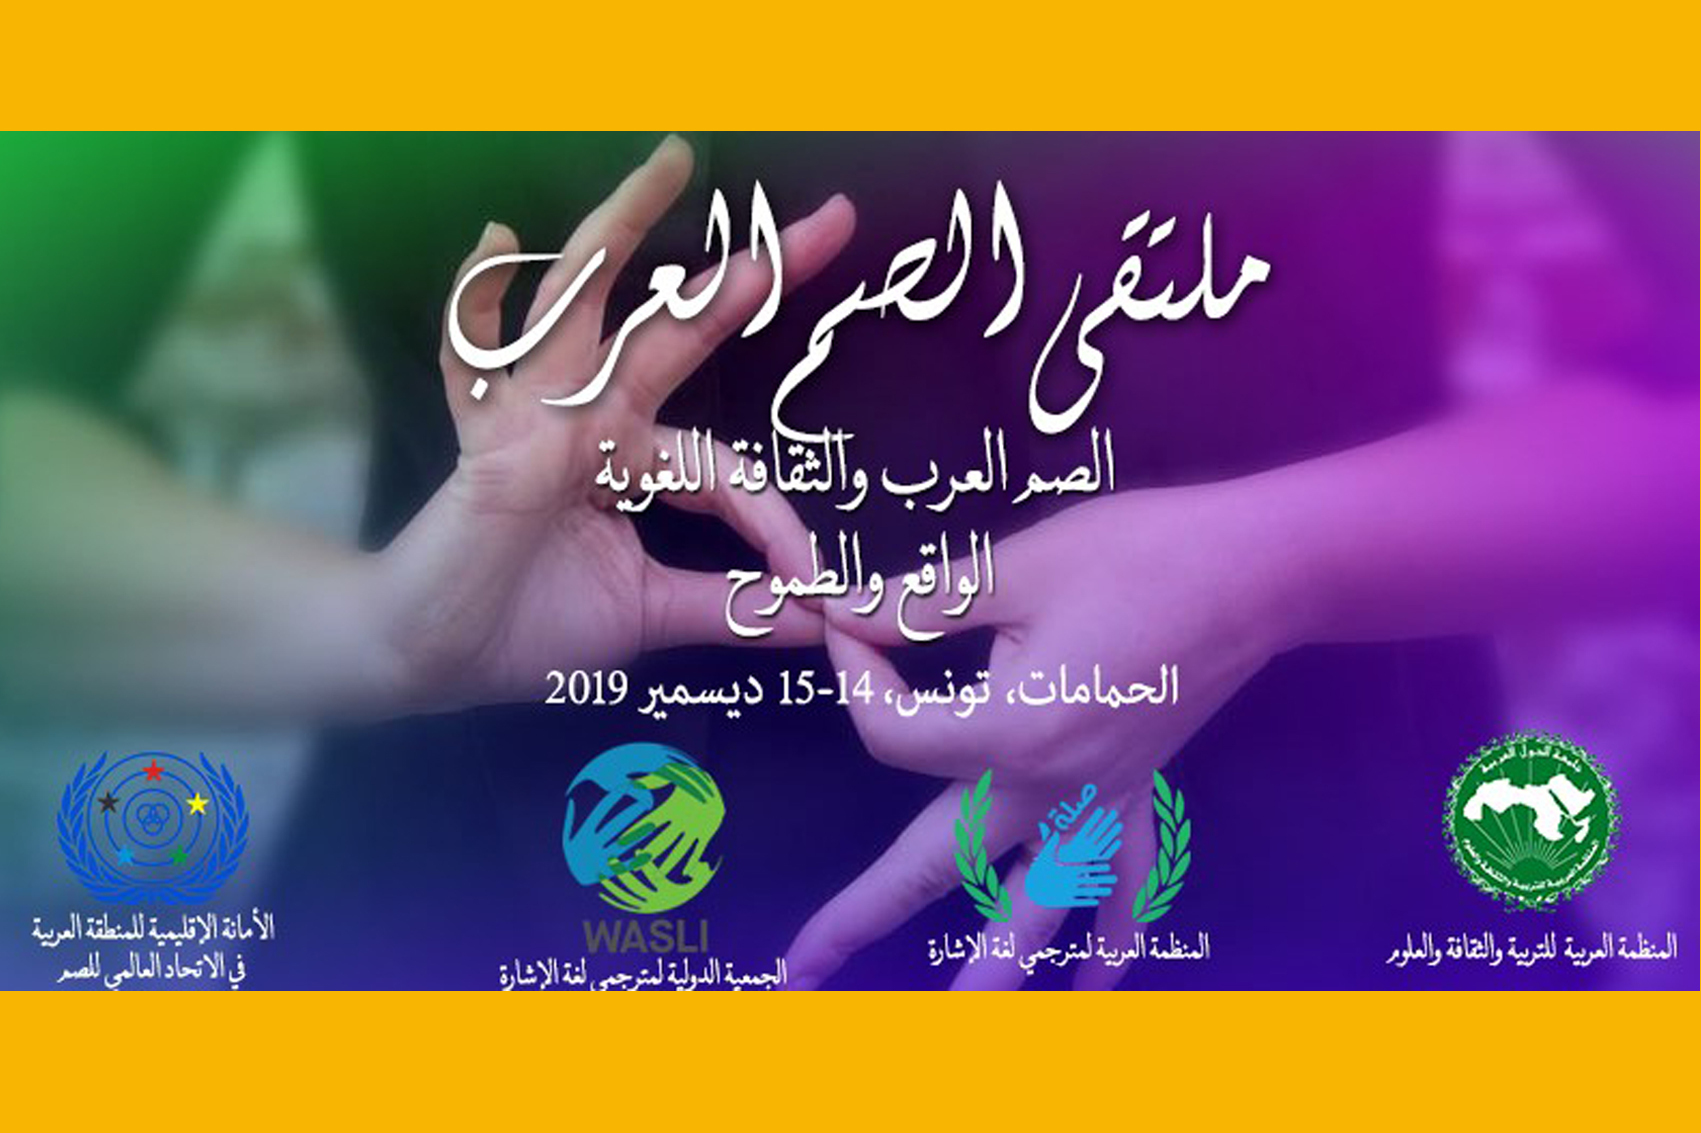 ملتقى الصم العرب (14 و15 ديسمبر 2019 ـ حمامات، تونس)